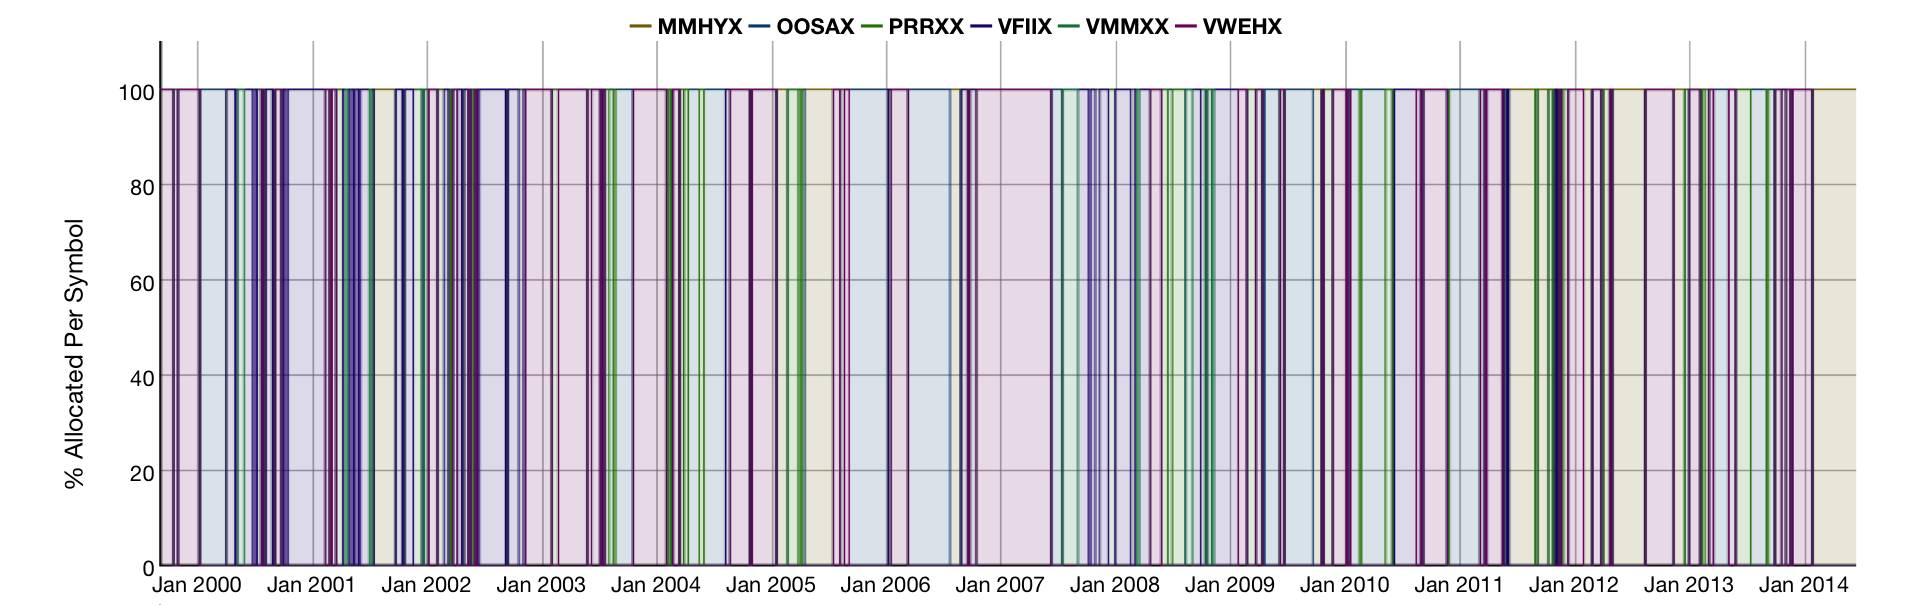 Vmmxx Chart